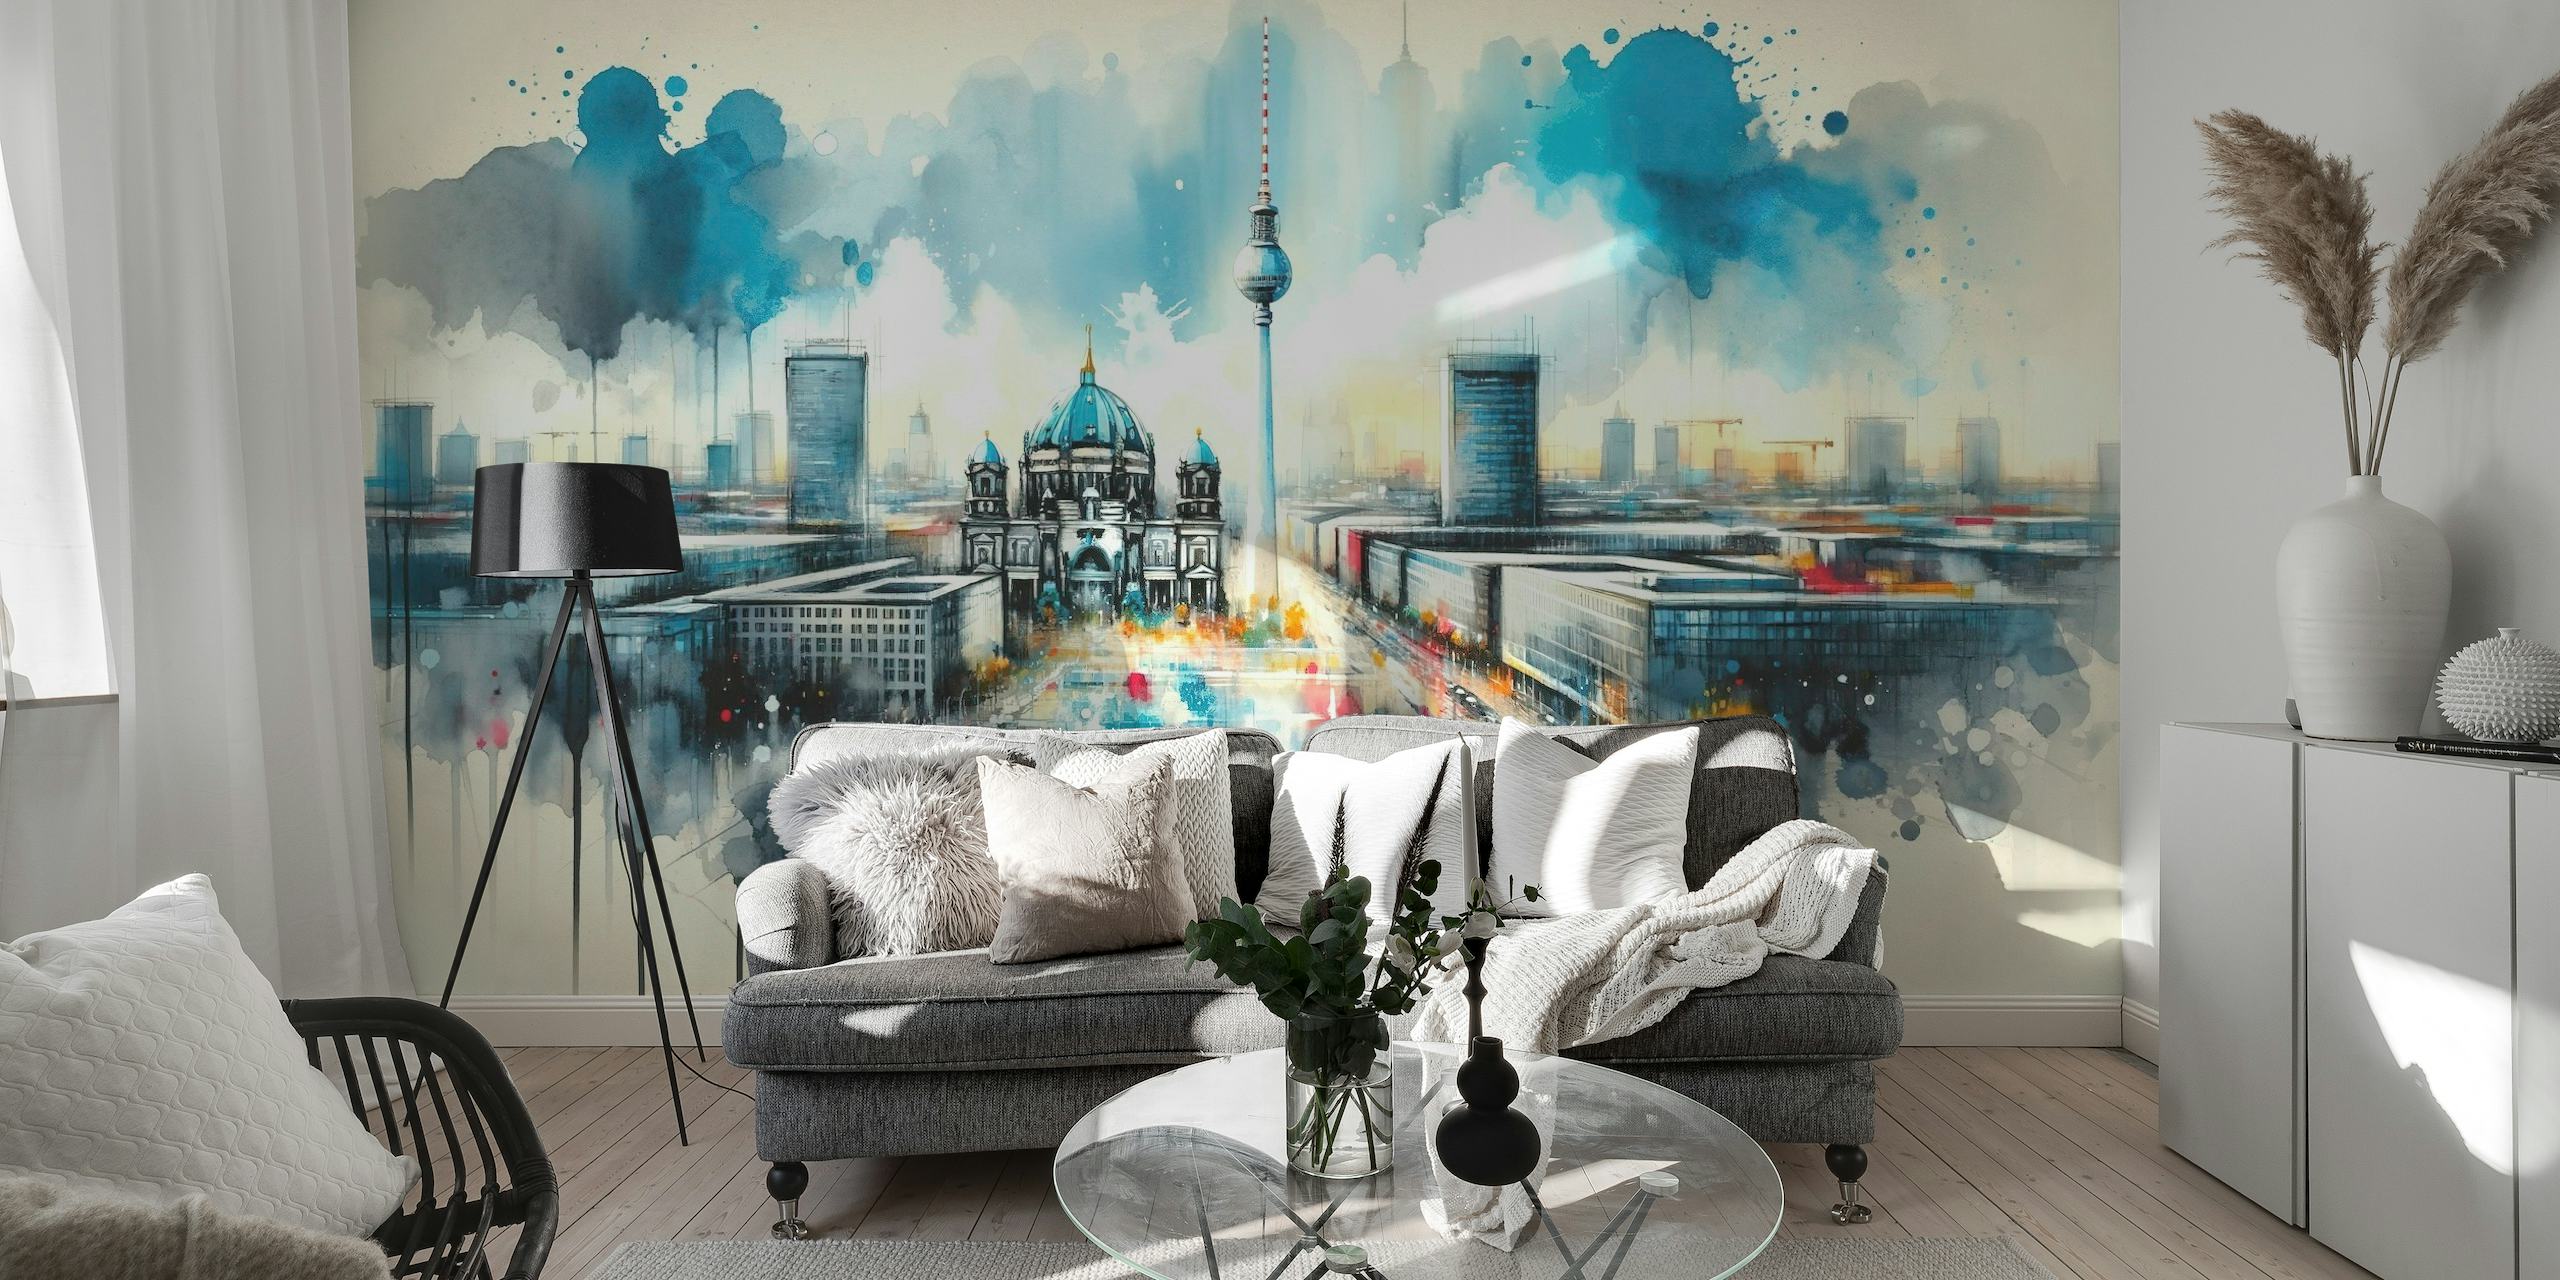 Akvarel vægmaleri af Berlins moderne arkitektur med ikoniske vartegn og en dynamisk, kunstnerisk fortolkning.